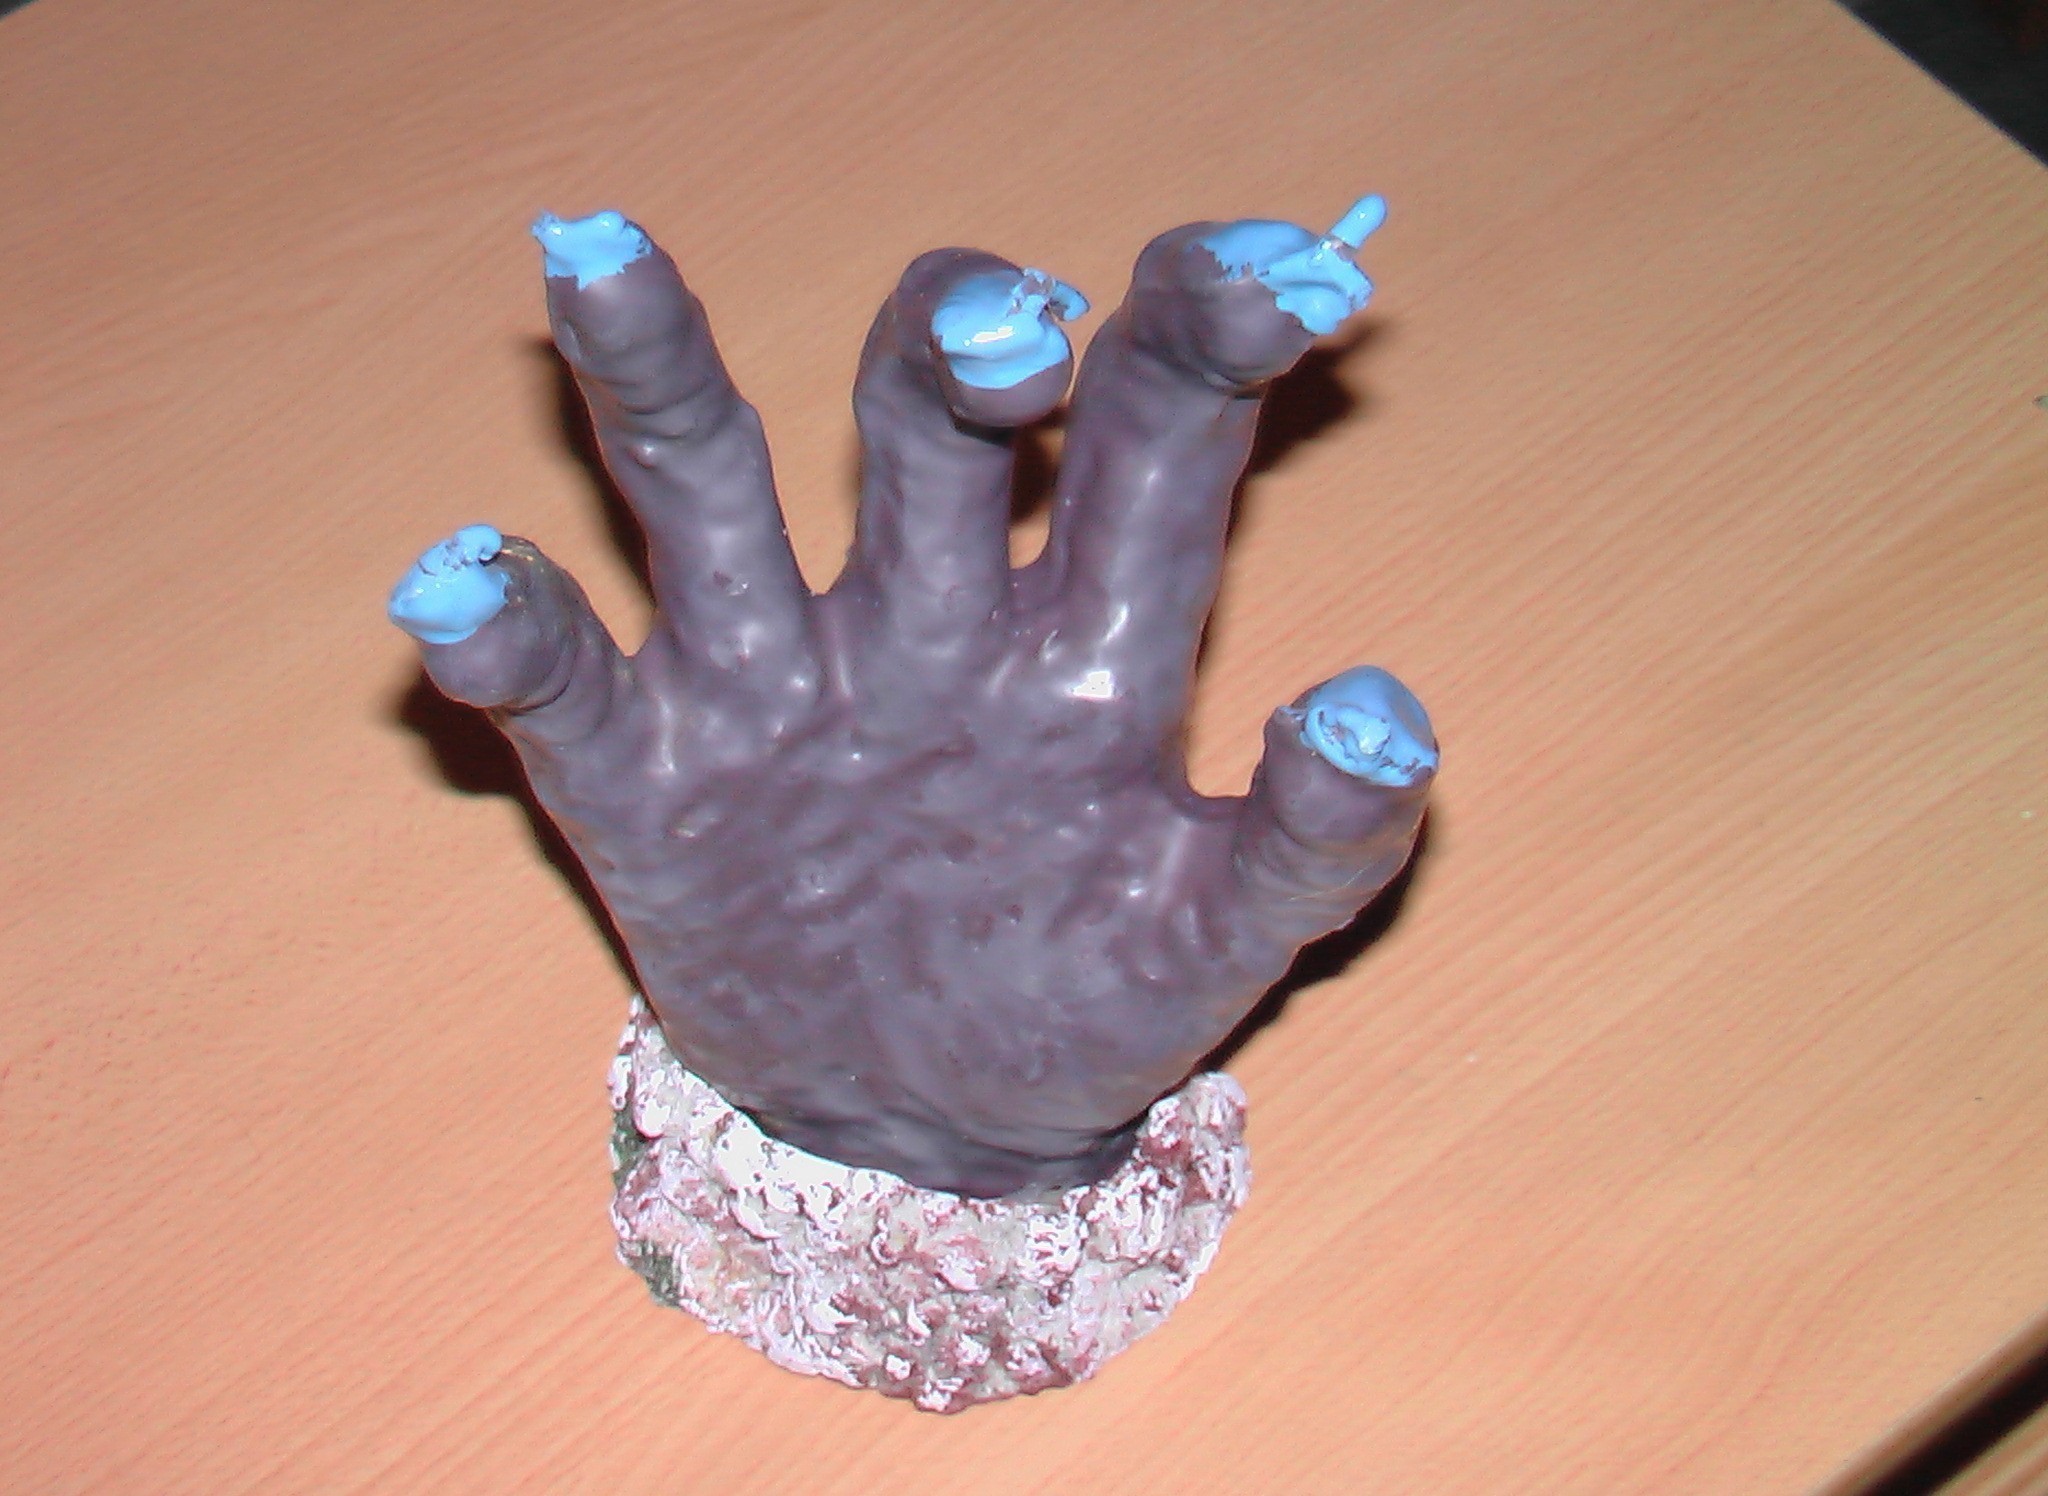 Horrorkerze Hand (nach dem Abbrennen erscheint eine Skeletthand)